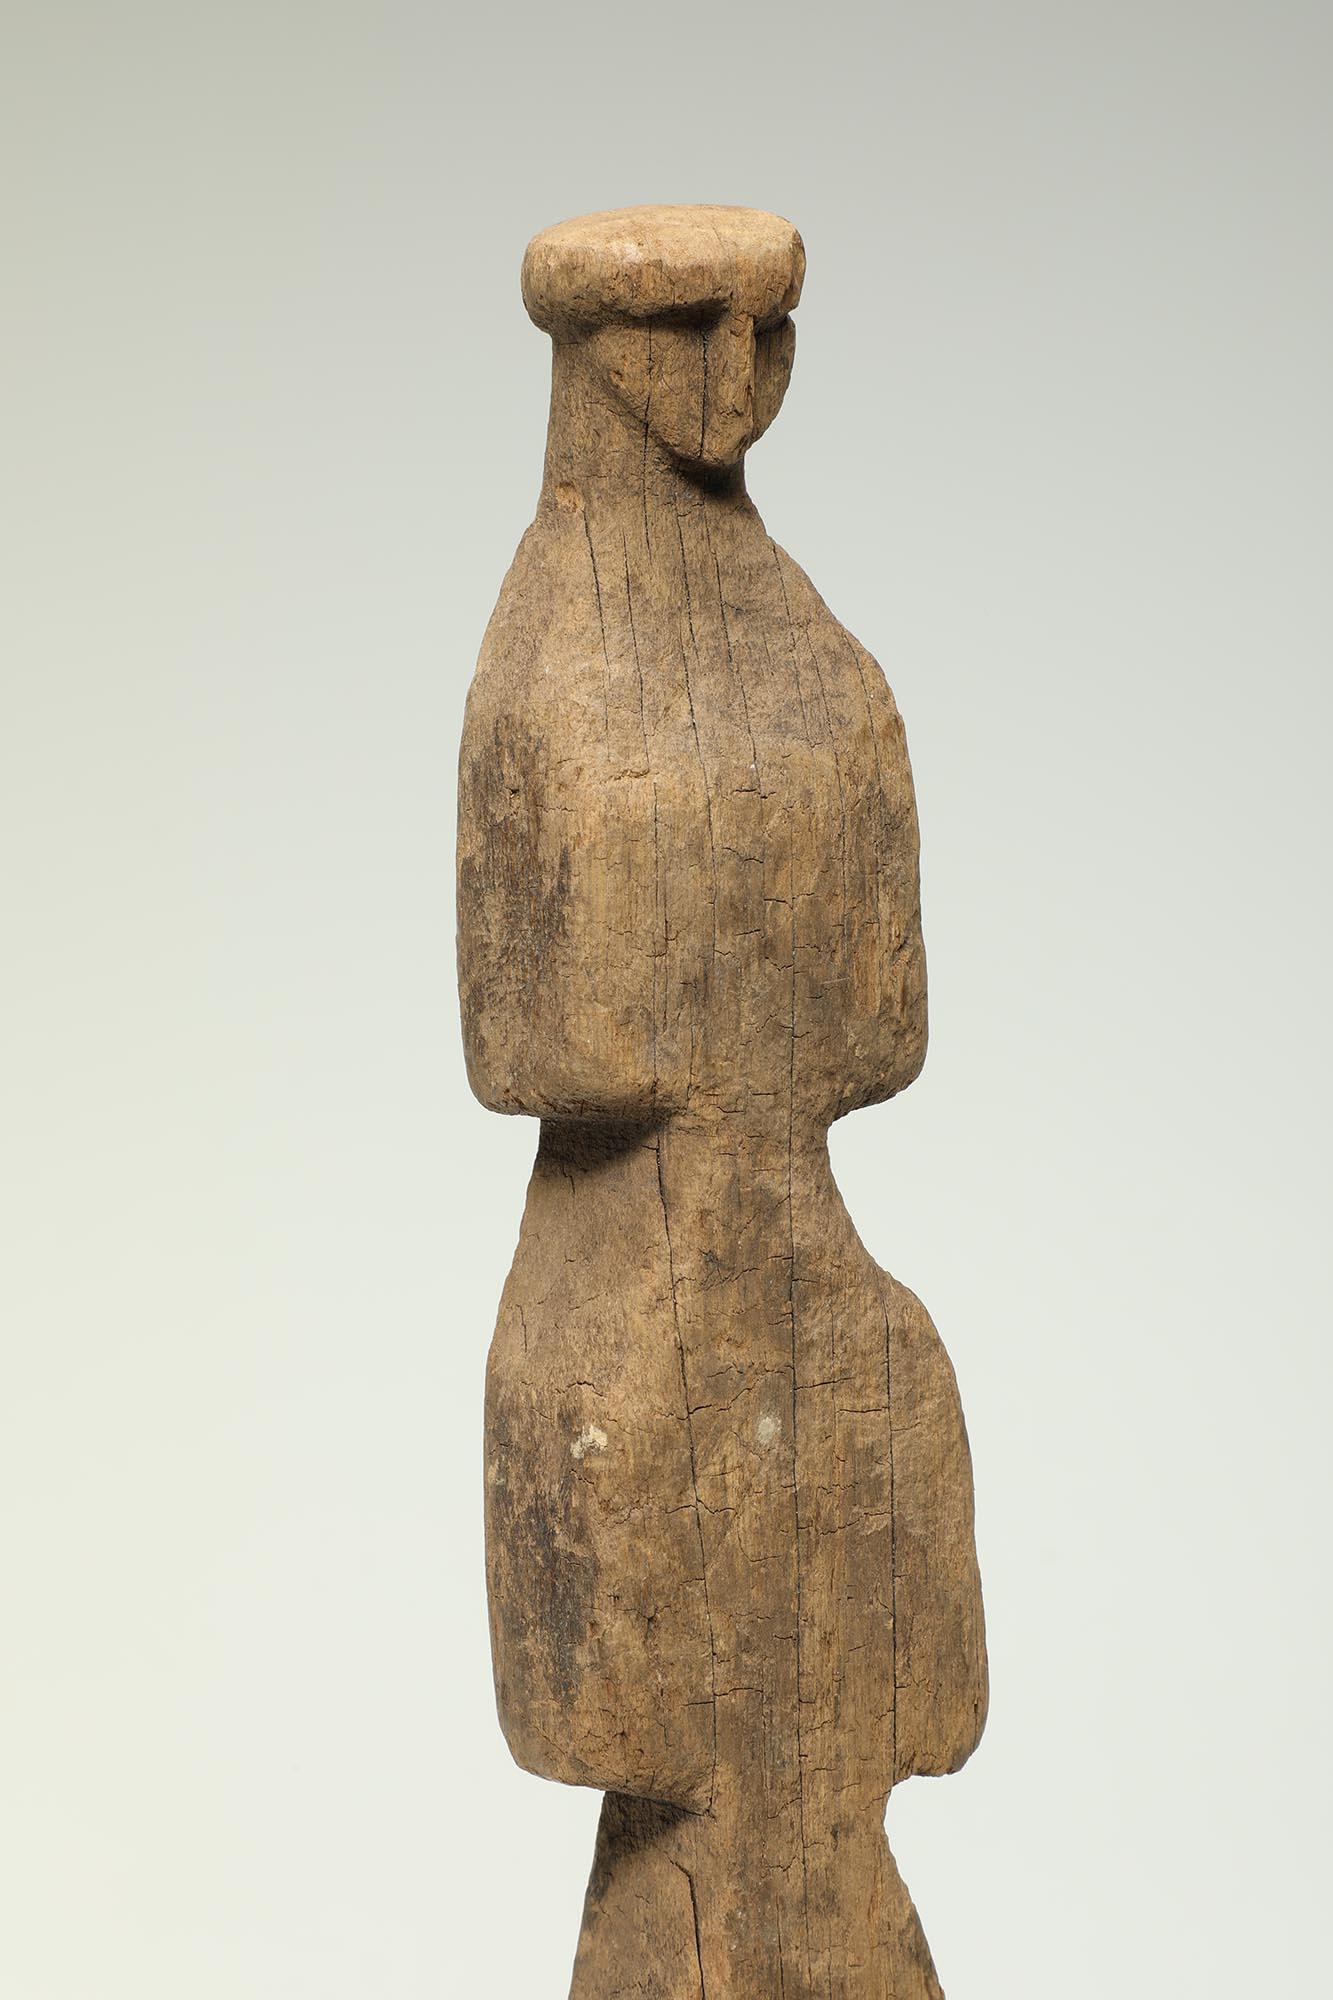 Alte, gut verwitterte abstrakte Figur aus Hartholz der Kuna-Indianer, Panama, Provenienz, alte Sammlung des Bundesstaates CA.
Hergestellt aus Ina Sua (Medizinholz), das von einem Heiler verwendet wird, der es auf die erkrankten Körperteile des